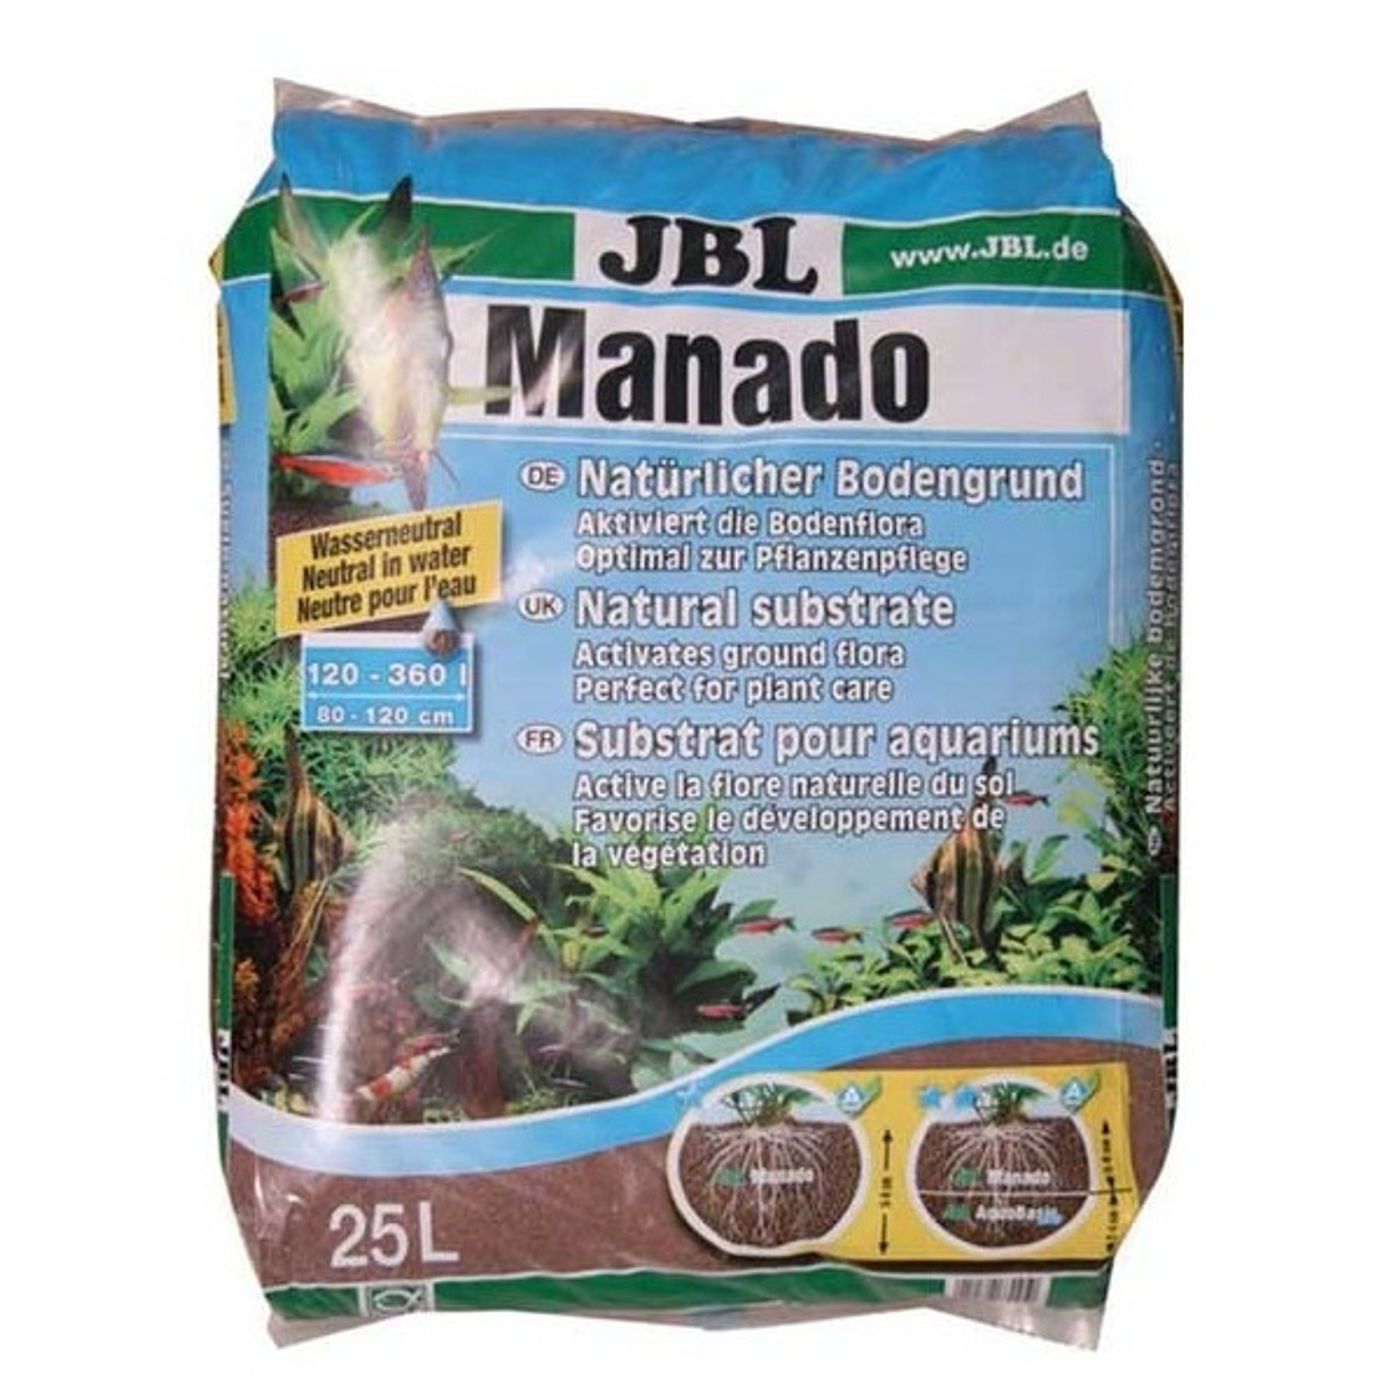 JBL-Manado--25L-